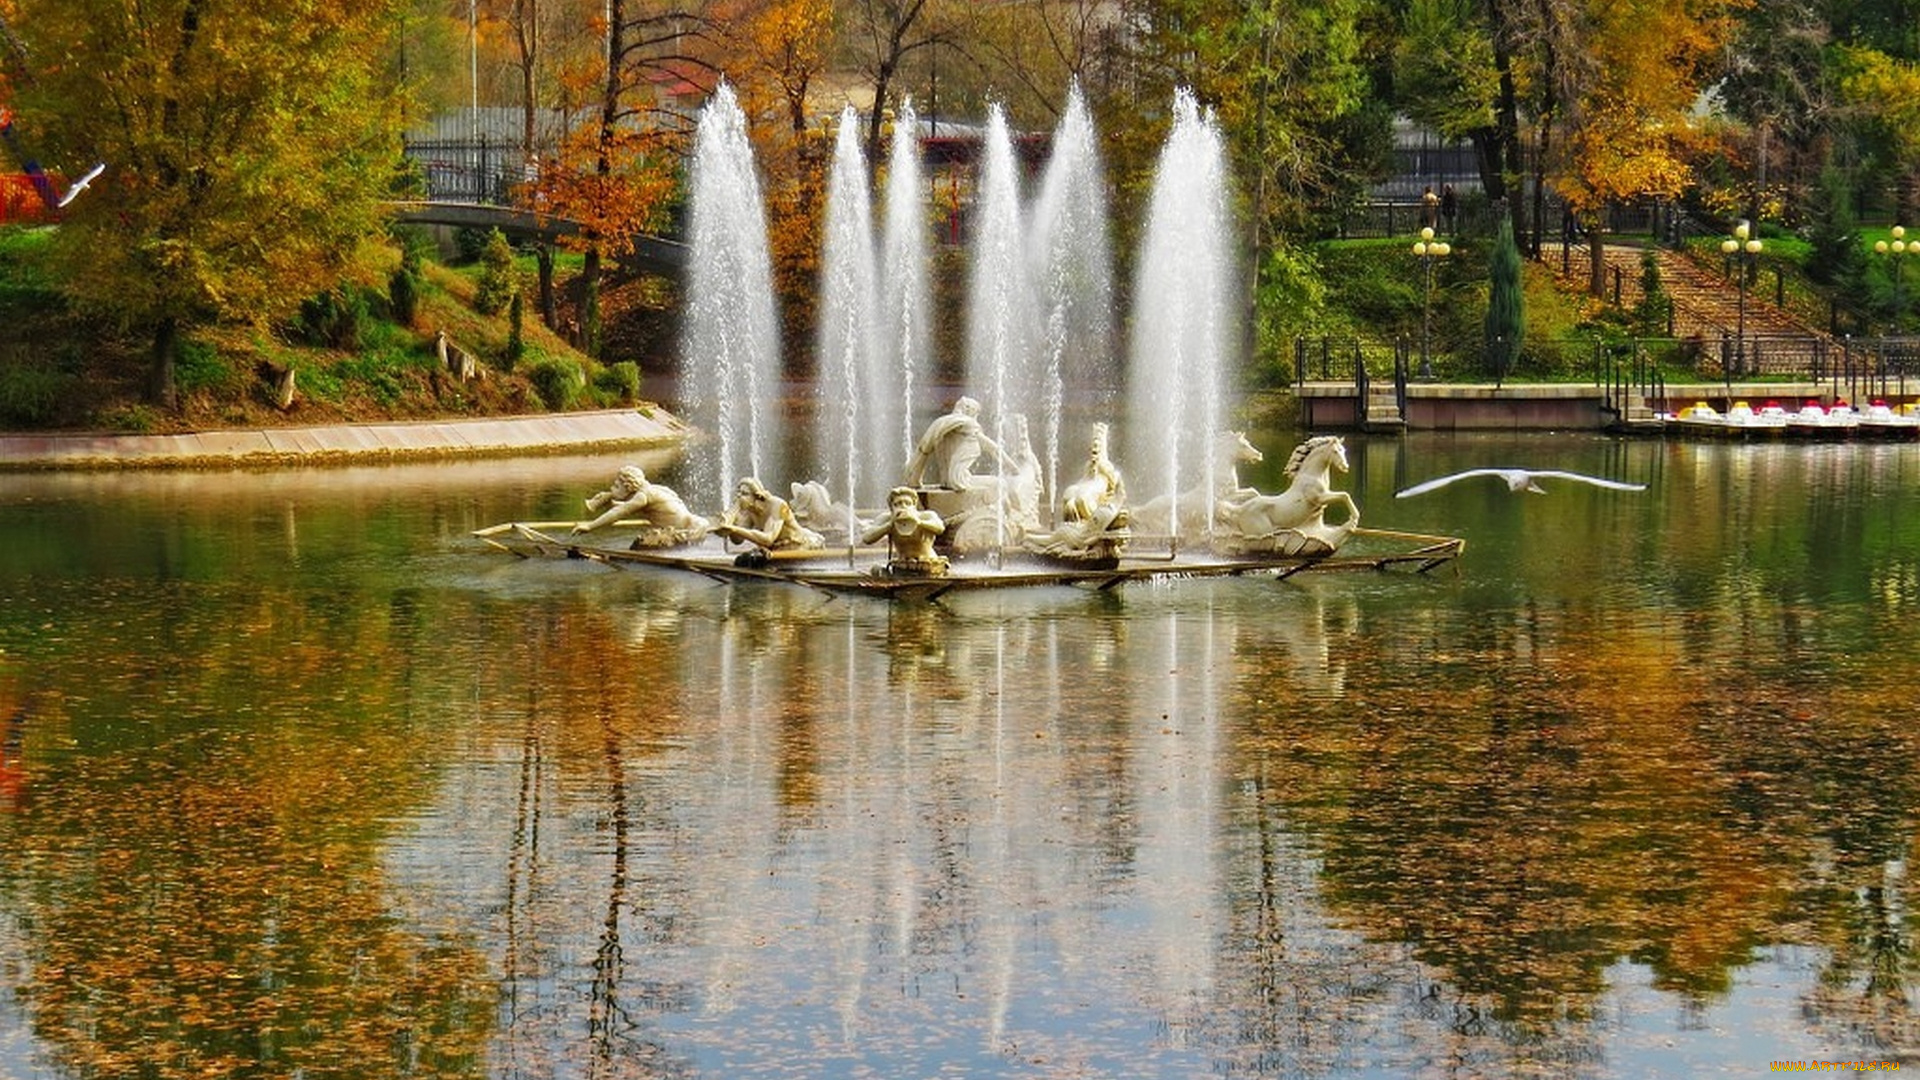 города, -, фонтаны, скульптура, конь, птица, листья, вода